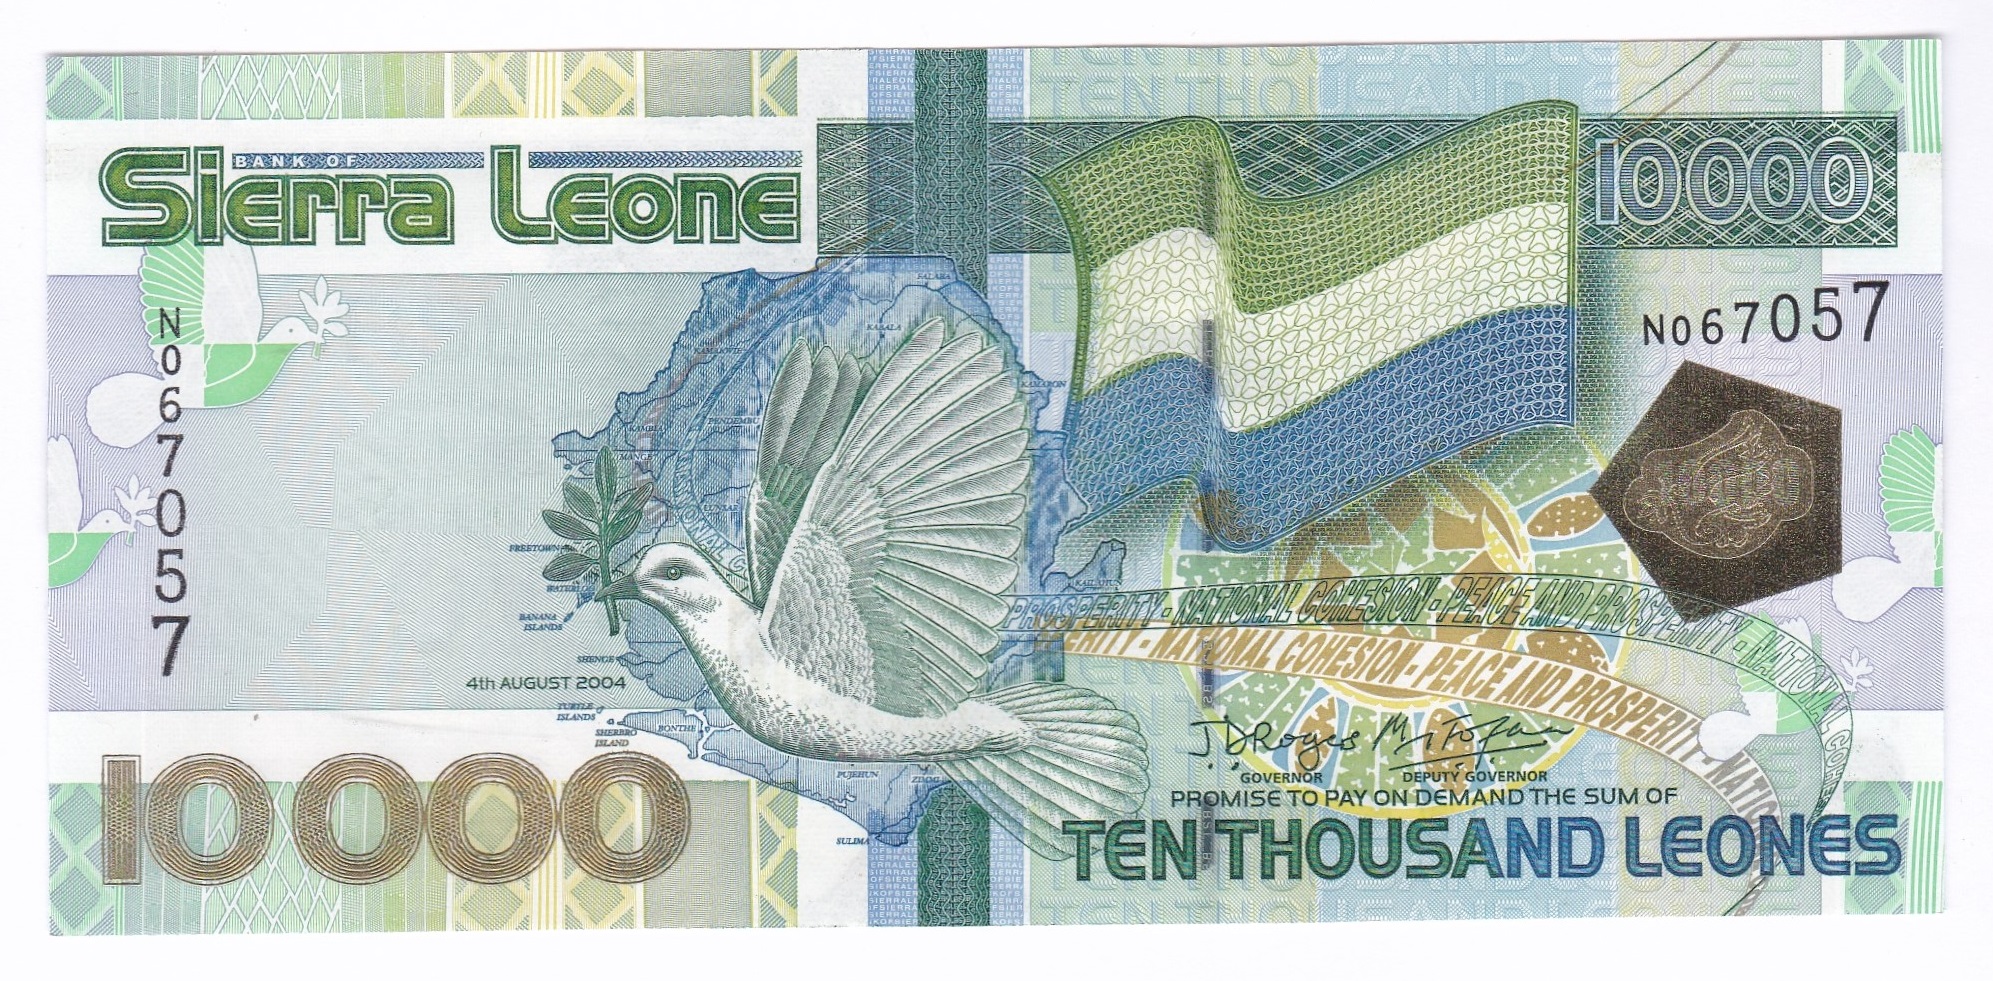 Sierra Leone - 2004 10,000 Leones, P29, AUNC - Image 2 of 2